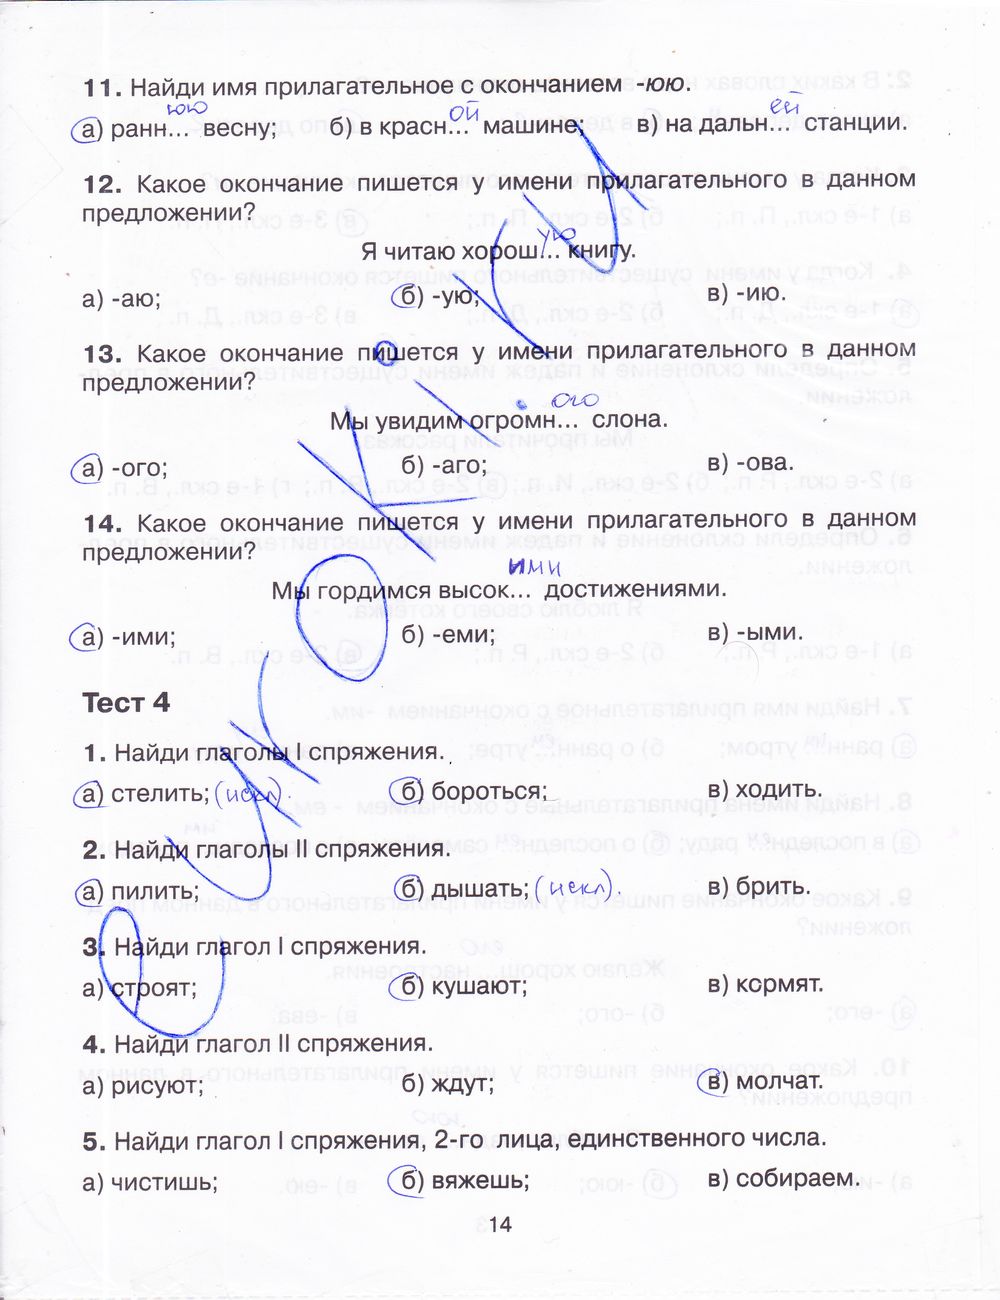 Тренажер русский язык 4 класс барковская ответы. Русский язык тренажер 4 класс ответы.